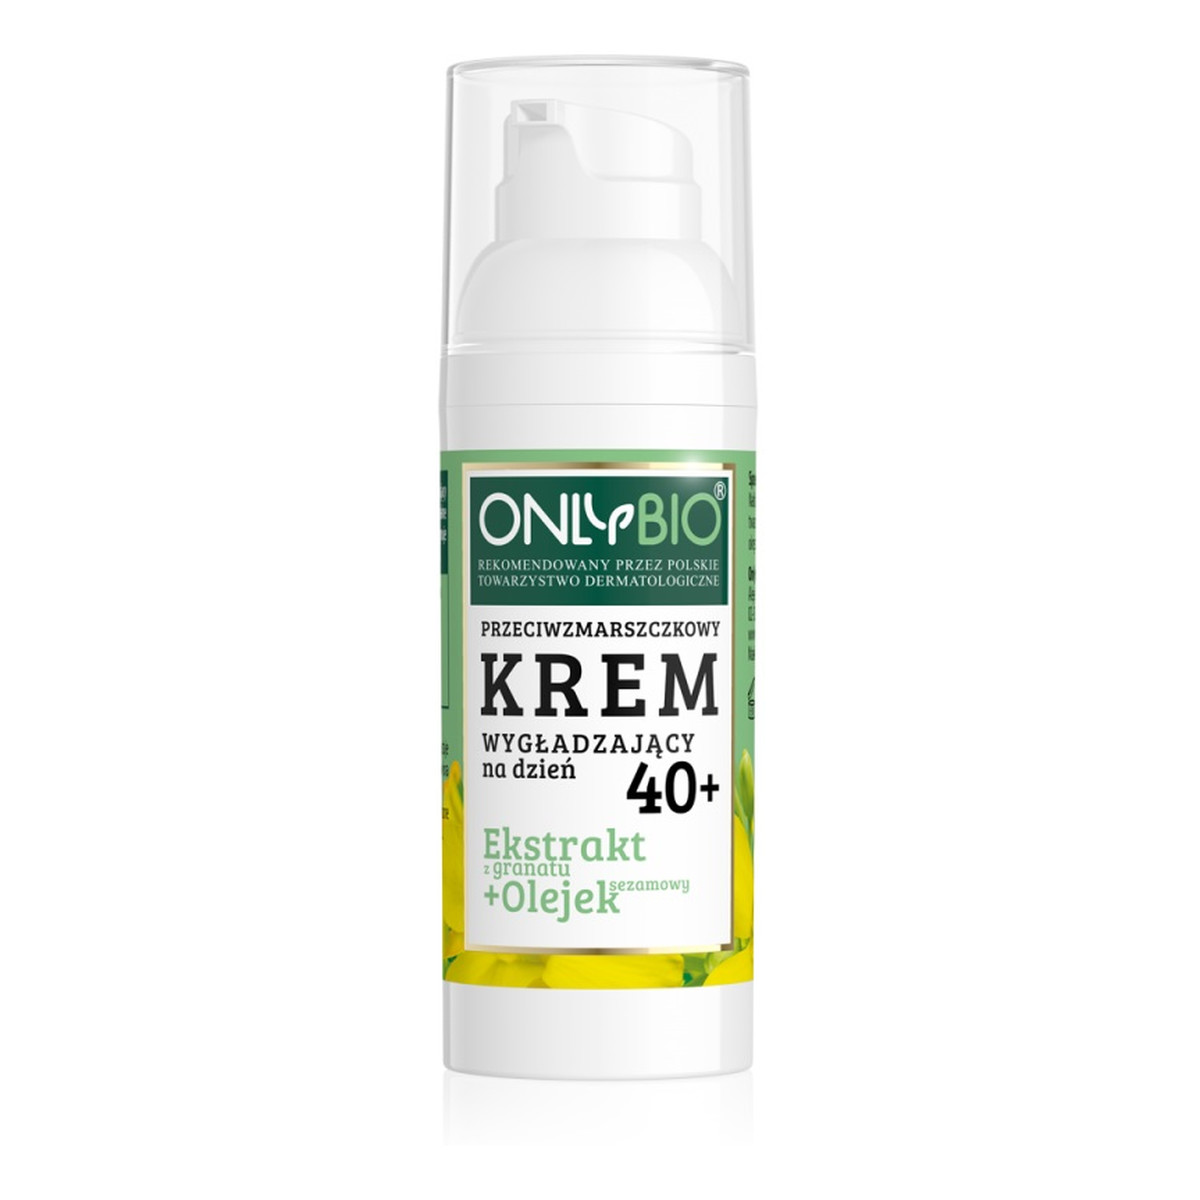 OnlyBio Krem 40+ do twarzy na dzień ekstrakt z granatu olejek sezamowy 50ml